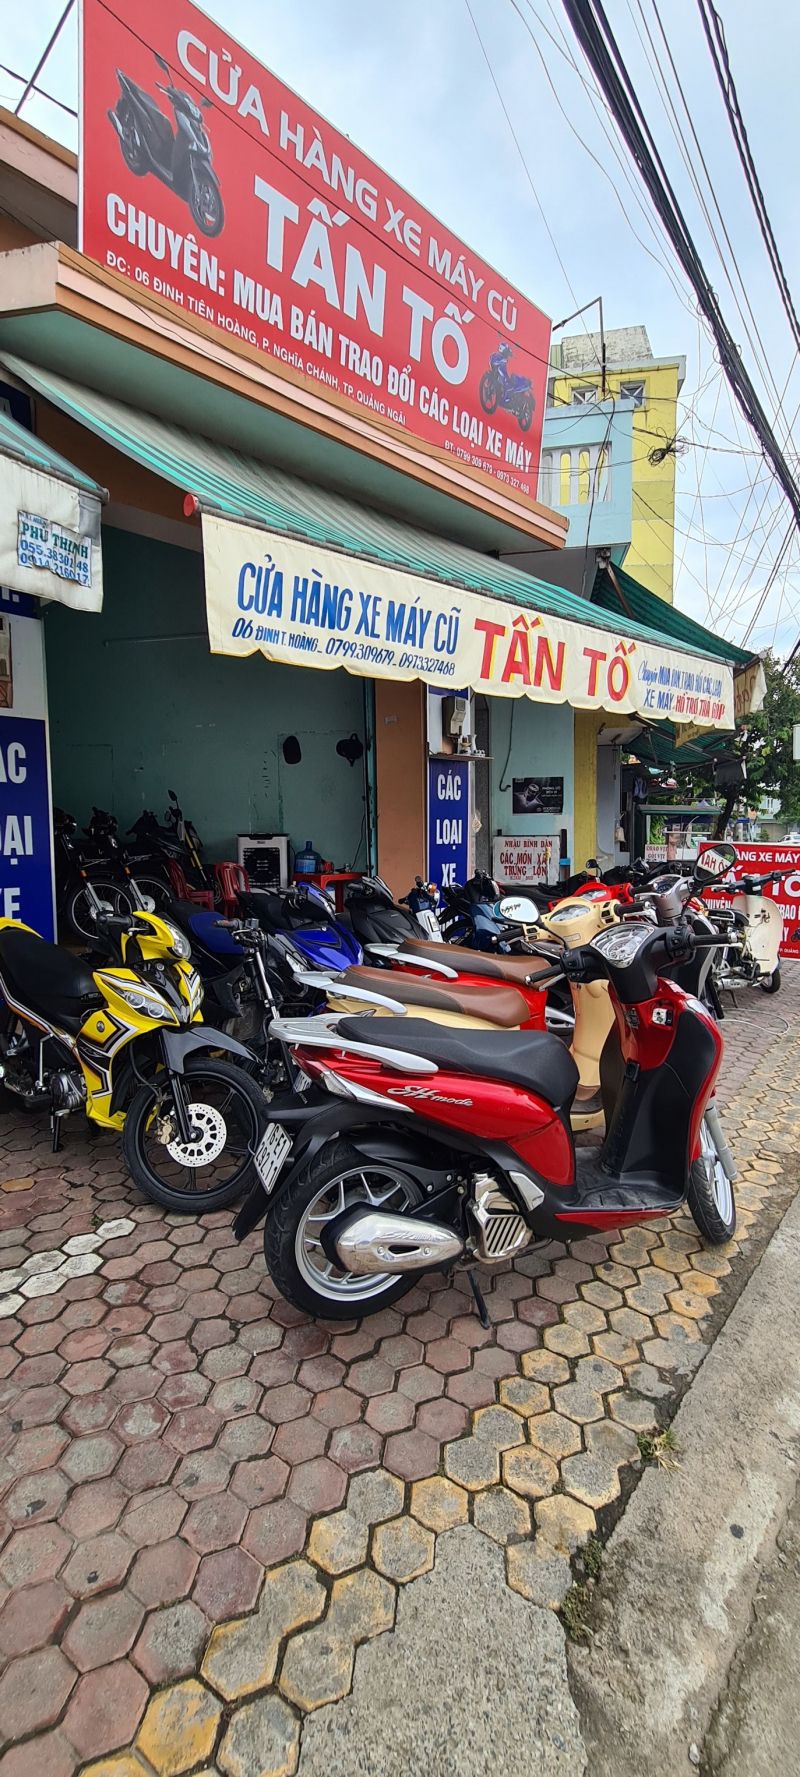 Cửa hàng xe máy cũ Tấn Tố